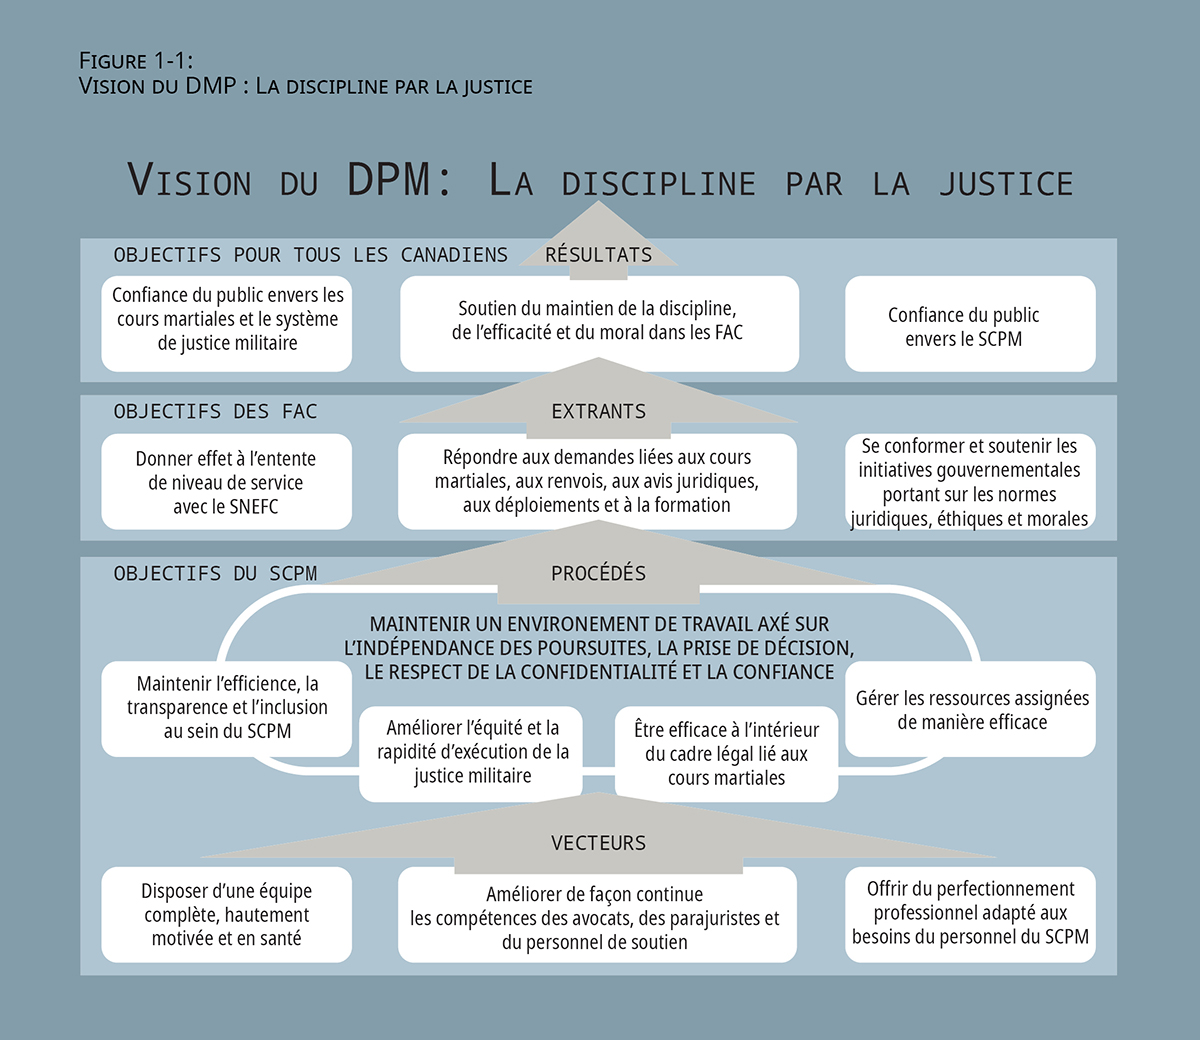 Figure 1-1: 
Vision du DMP : La discipline par la justice. Sa description suit ci-bas